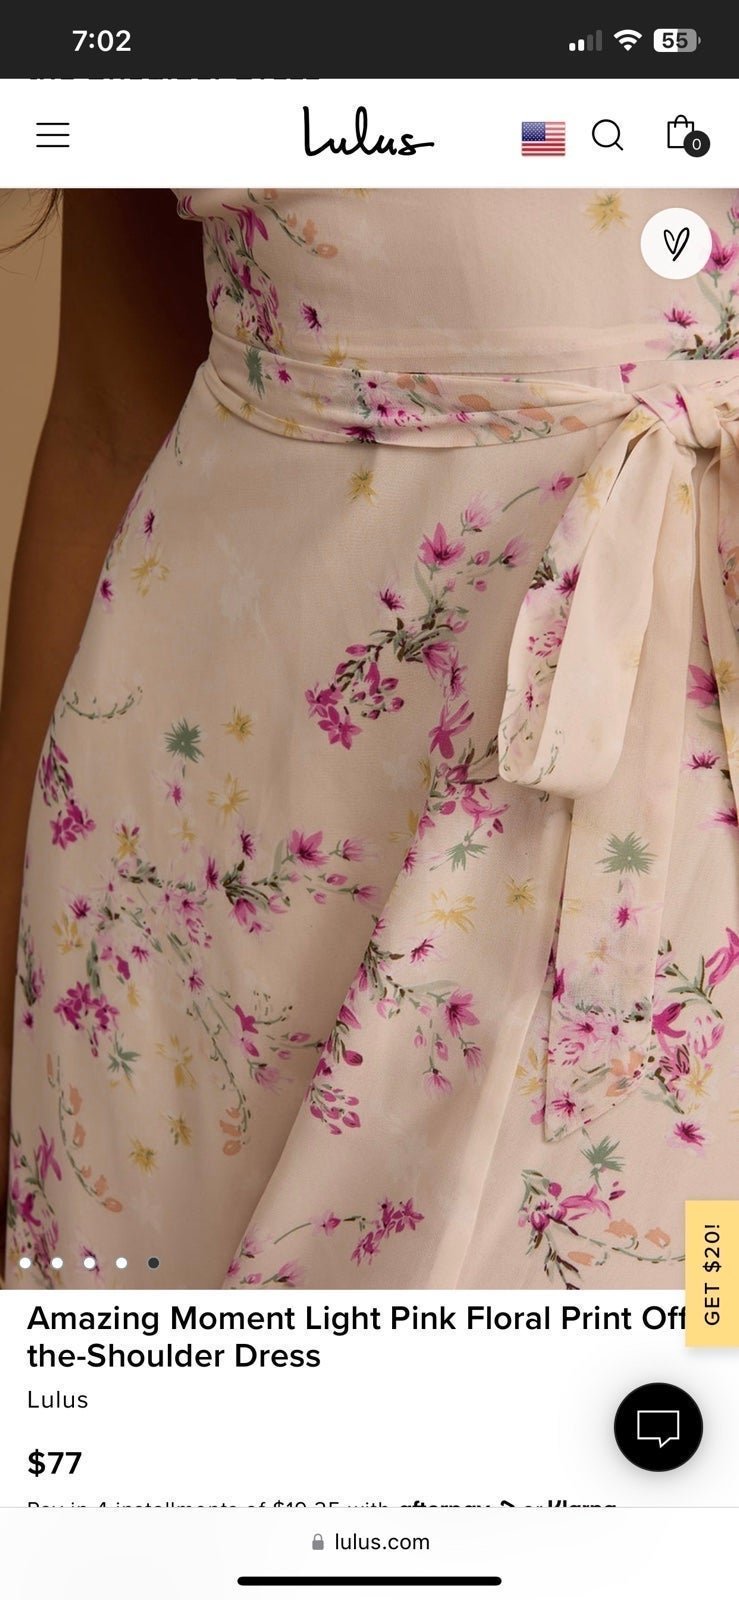 big discount Lulus pink floral maxi dress JTpsohPT1 Low Price